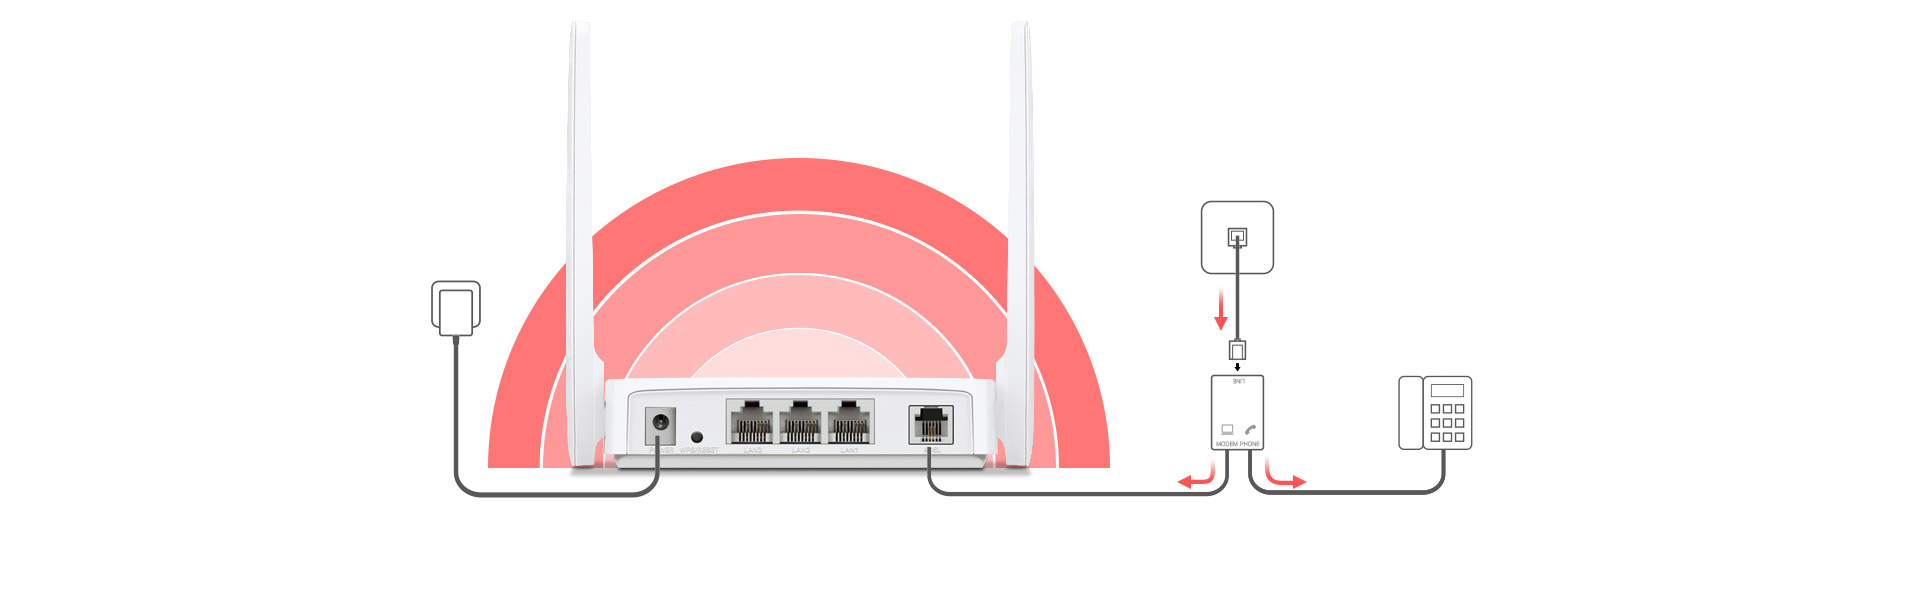 مودم روتر بی سیم 2 آنتن ADSL مرکوسیس مدل MW300D